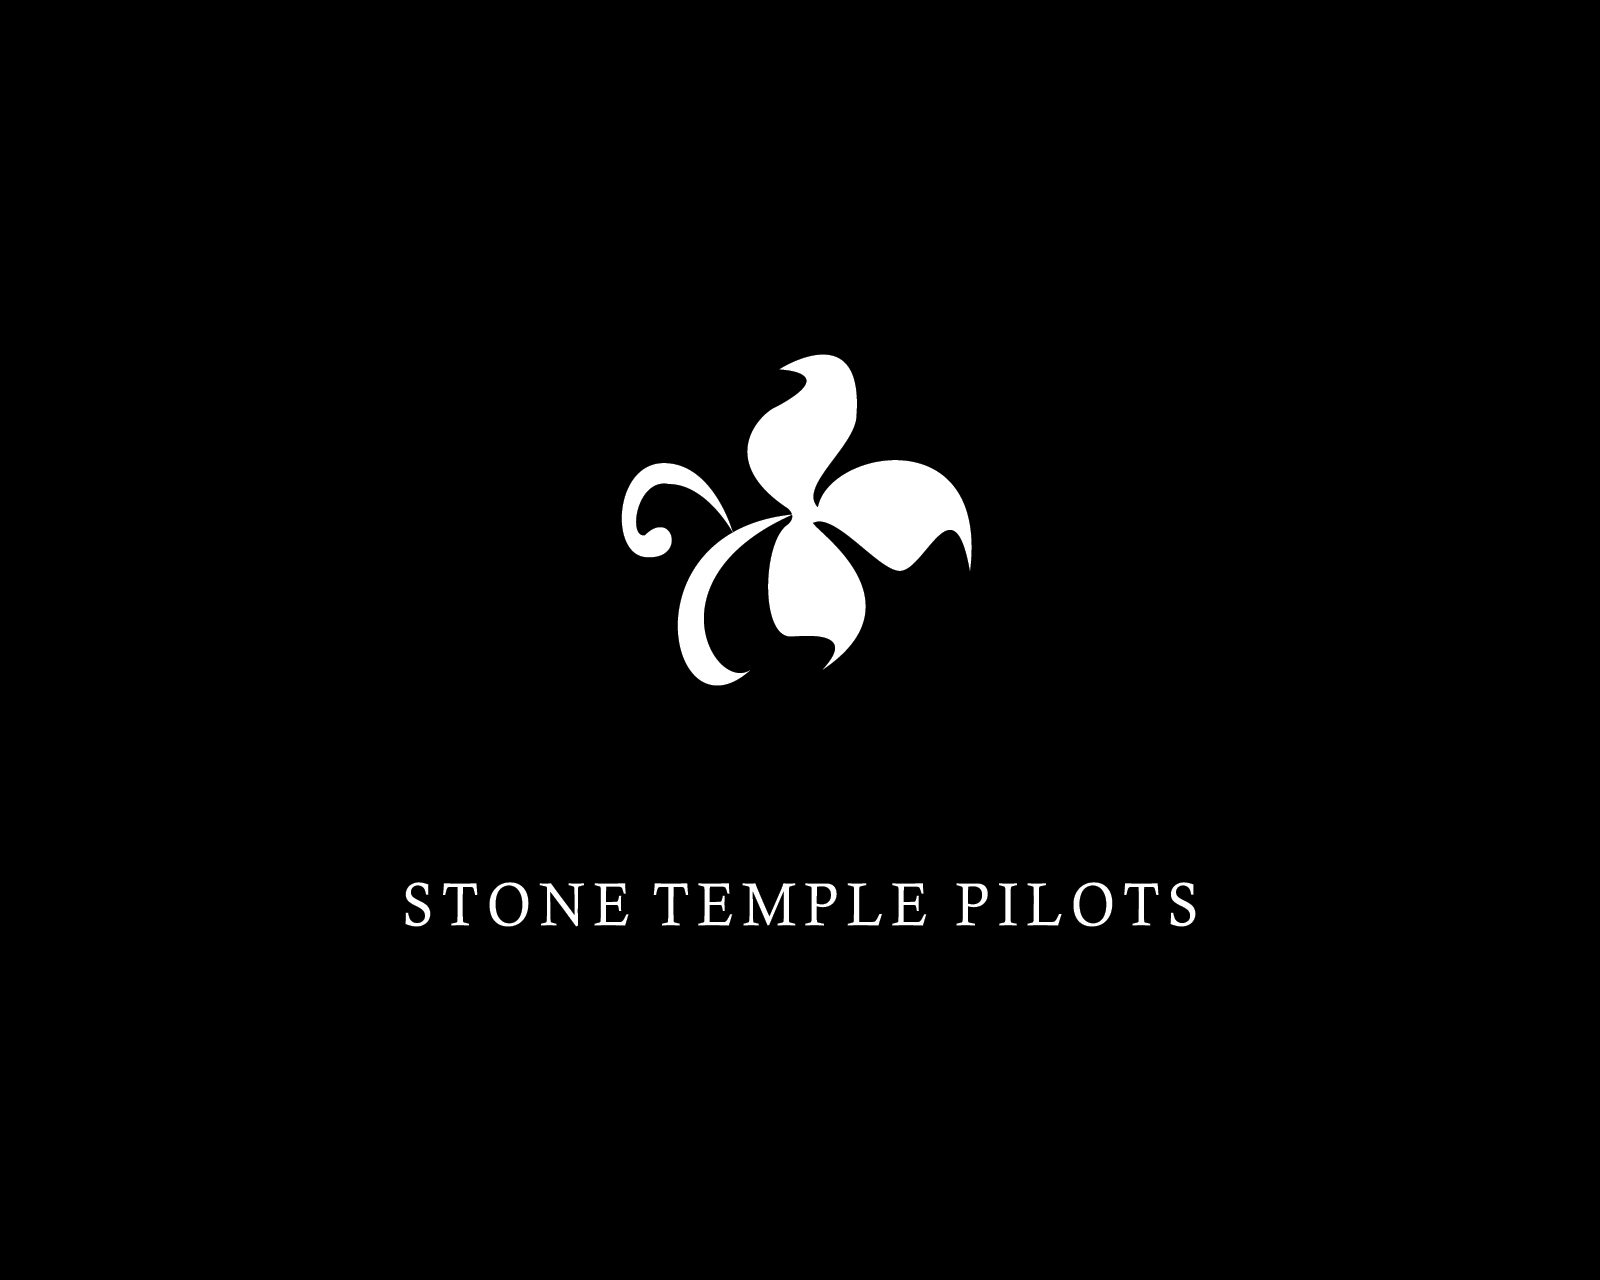 Популярные заставки и фоны Пилоты Каменного Храма на компьютер